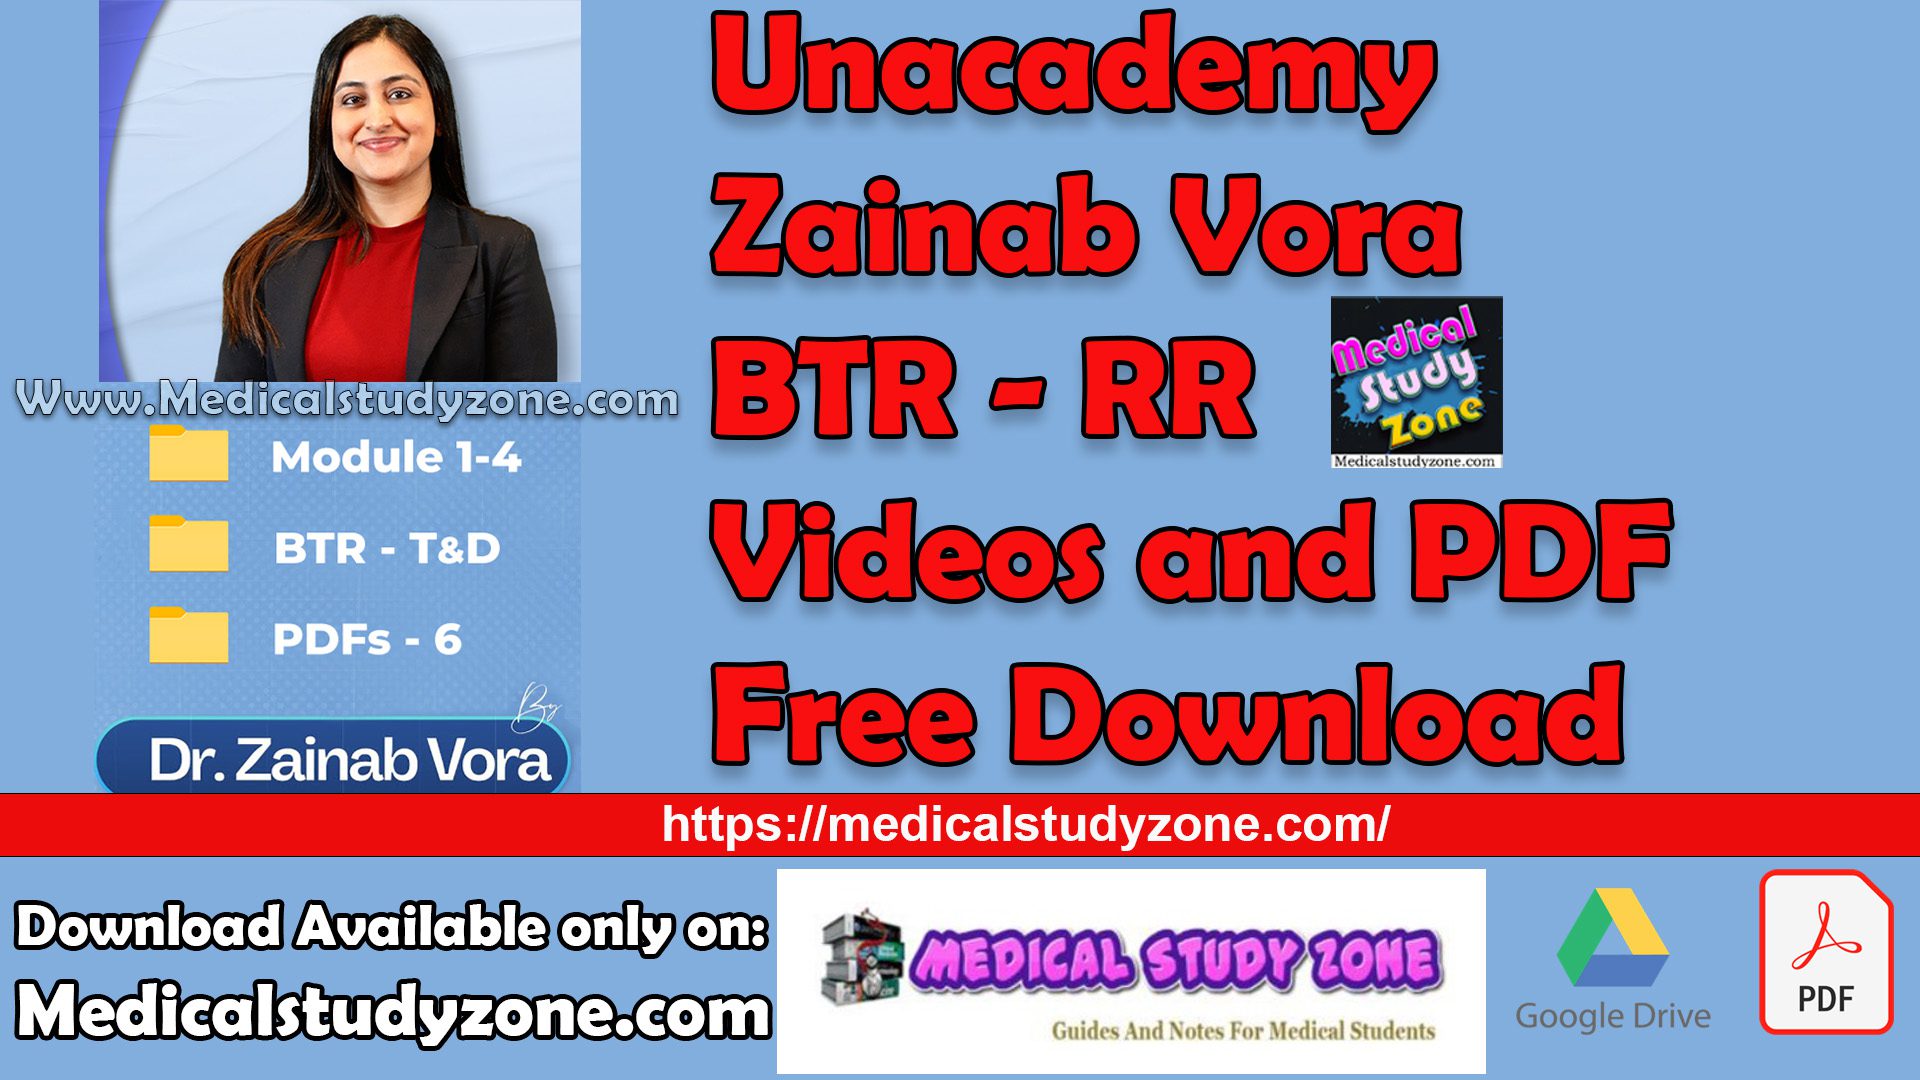 Unacademy Zainab Vora BTR - RR Videos and PDF Free Download